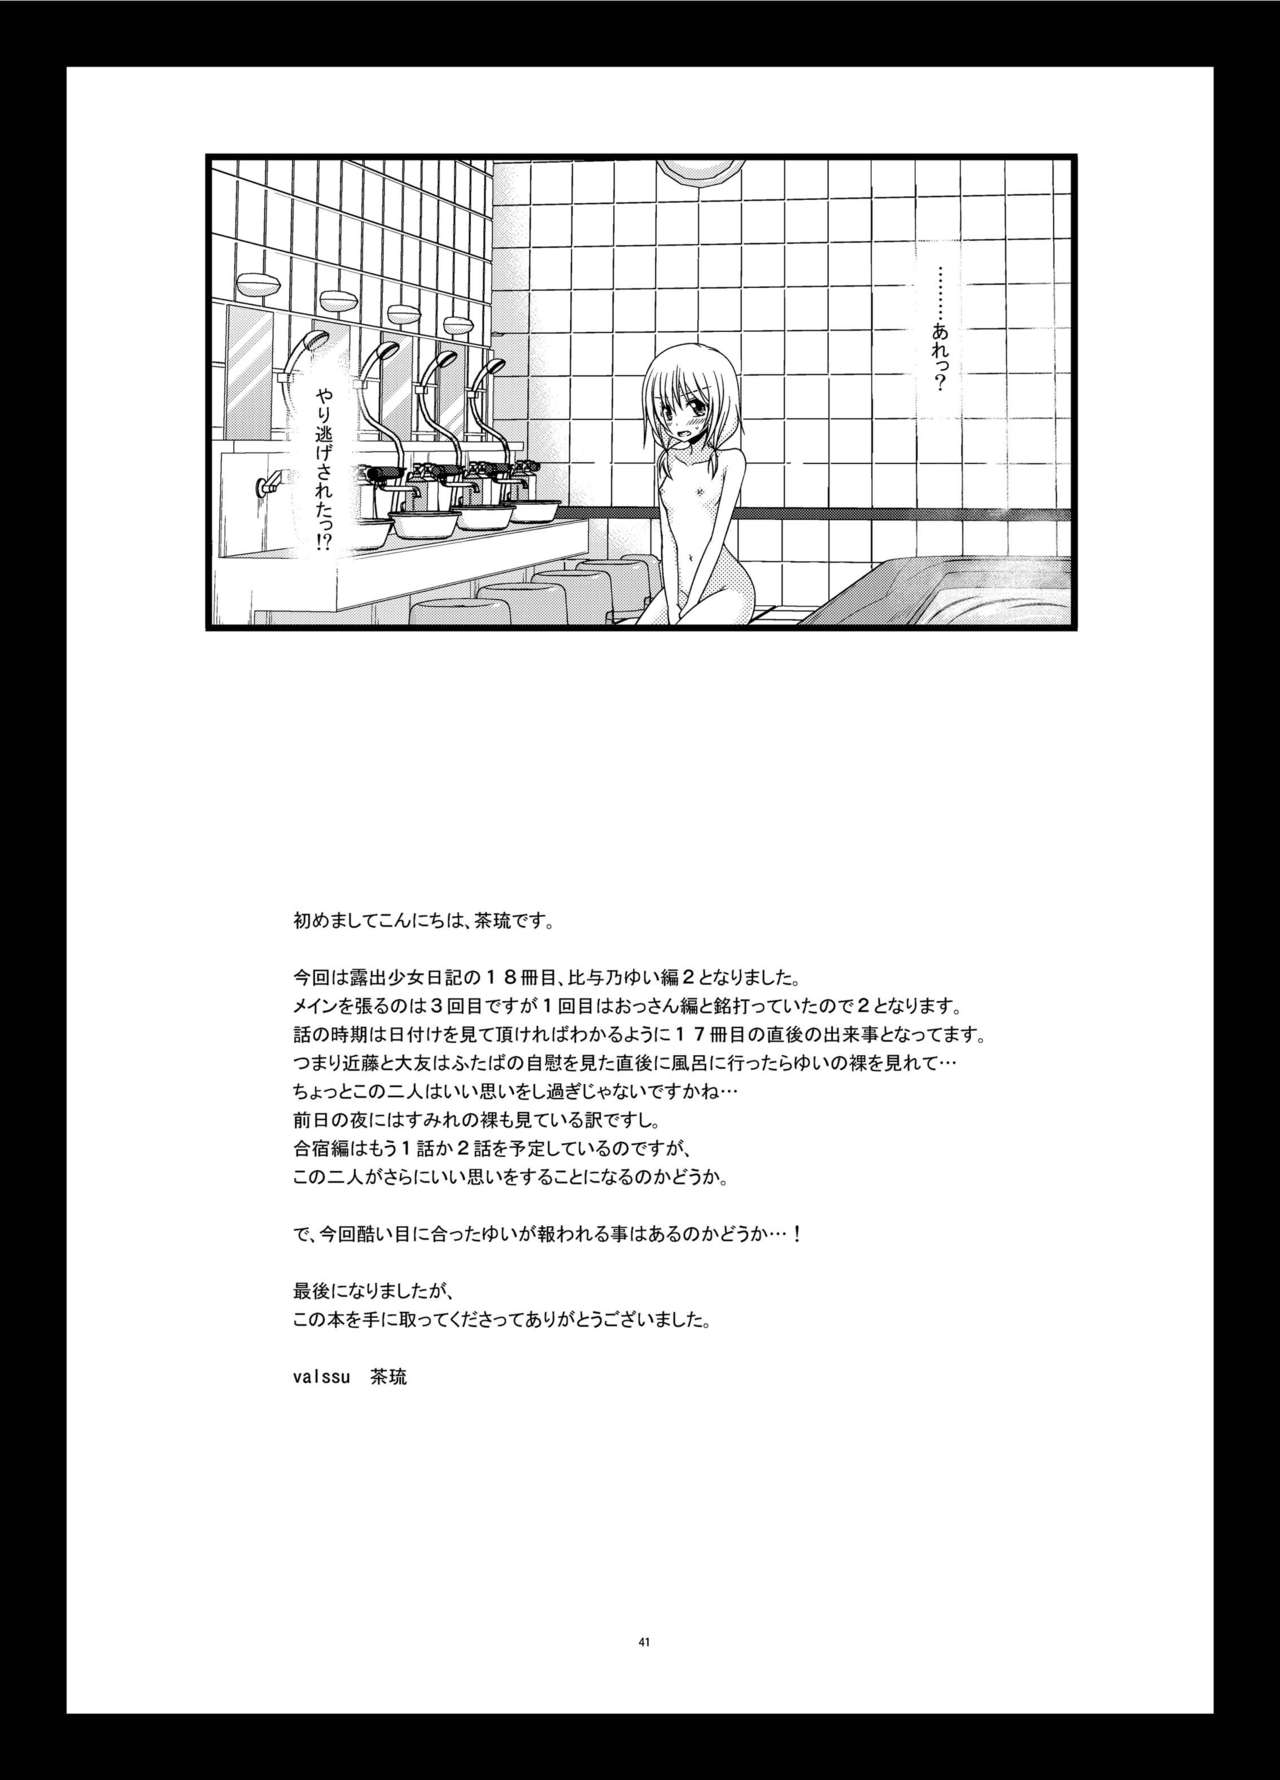 [valssu (Charu)] Roshutsu Shoujo Nikki 18 Satsume [Digital] page 41 full